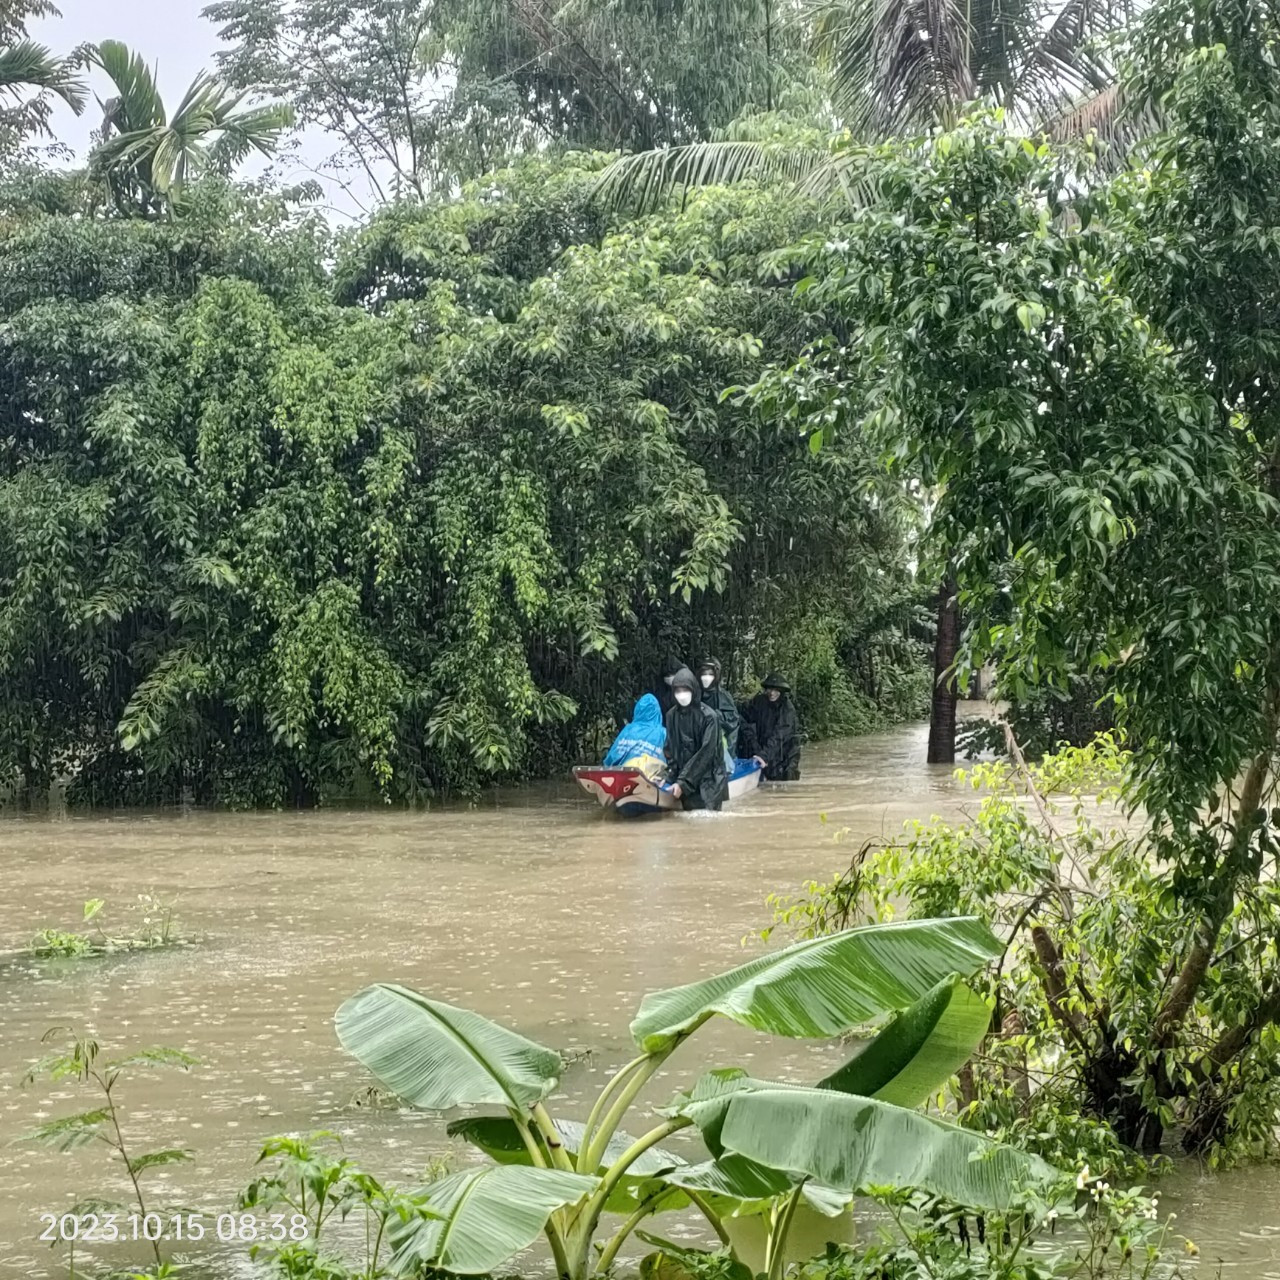 Mưa ngập đường, người dân xã Tam Thăng dùng ghe thuyền làm phương tiên lưu thông